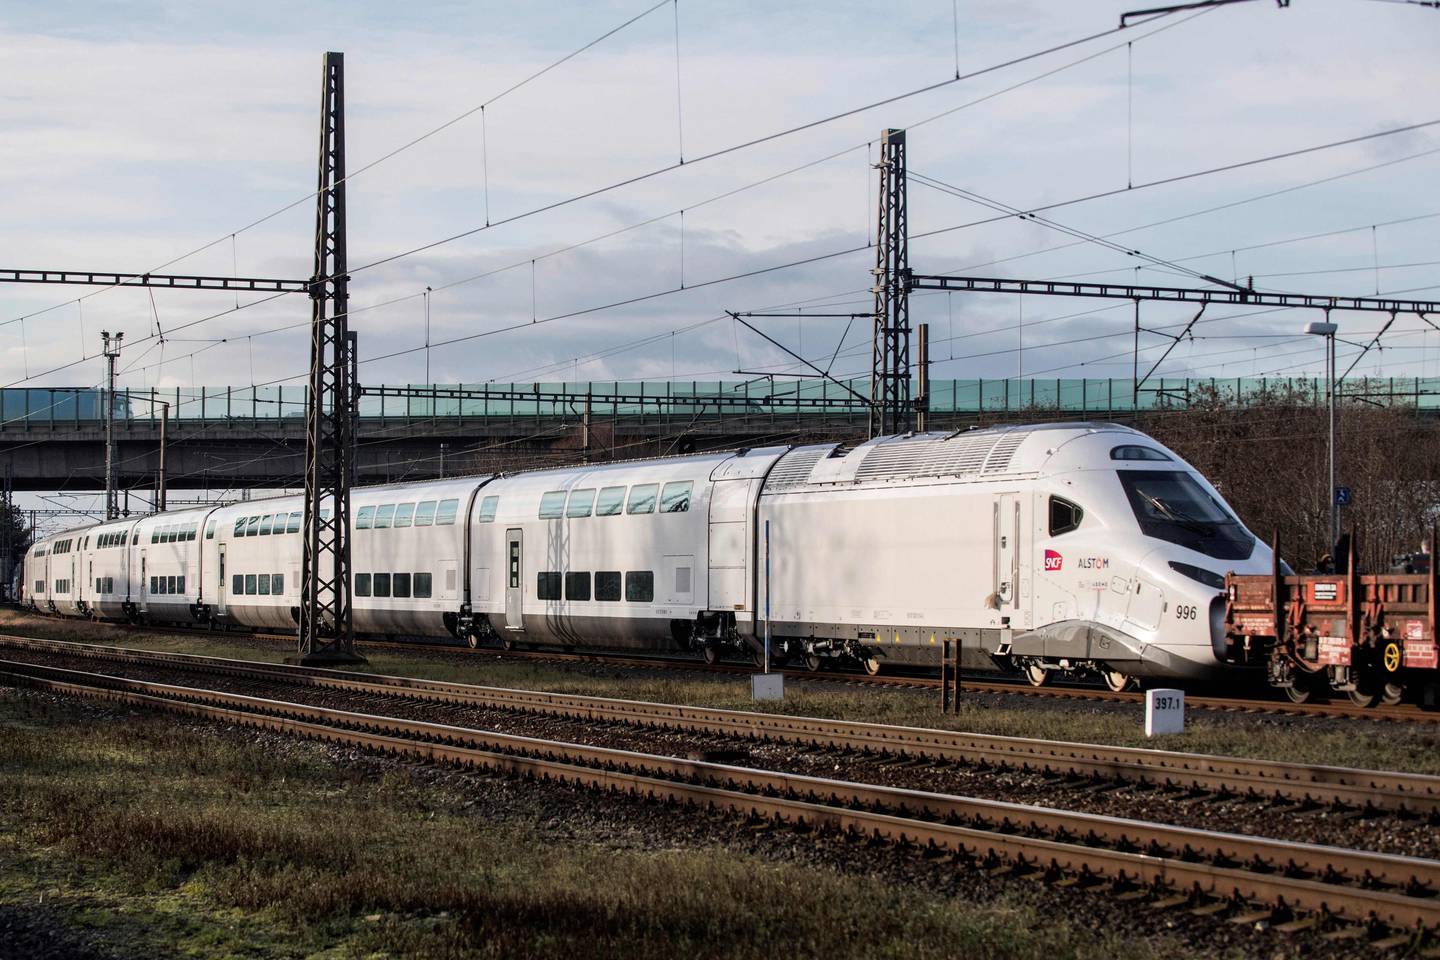 Høyhastighetstoget Avelia Horizon, som nå brukes i blant annet Frankrike, har med sine to etasjer 20 prosent høyere kapasitet enn andre lignende tog. Likevel bruker toget 20 prosent mindre energi, ifølge Alstom.